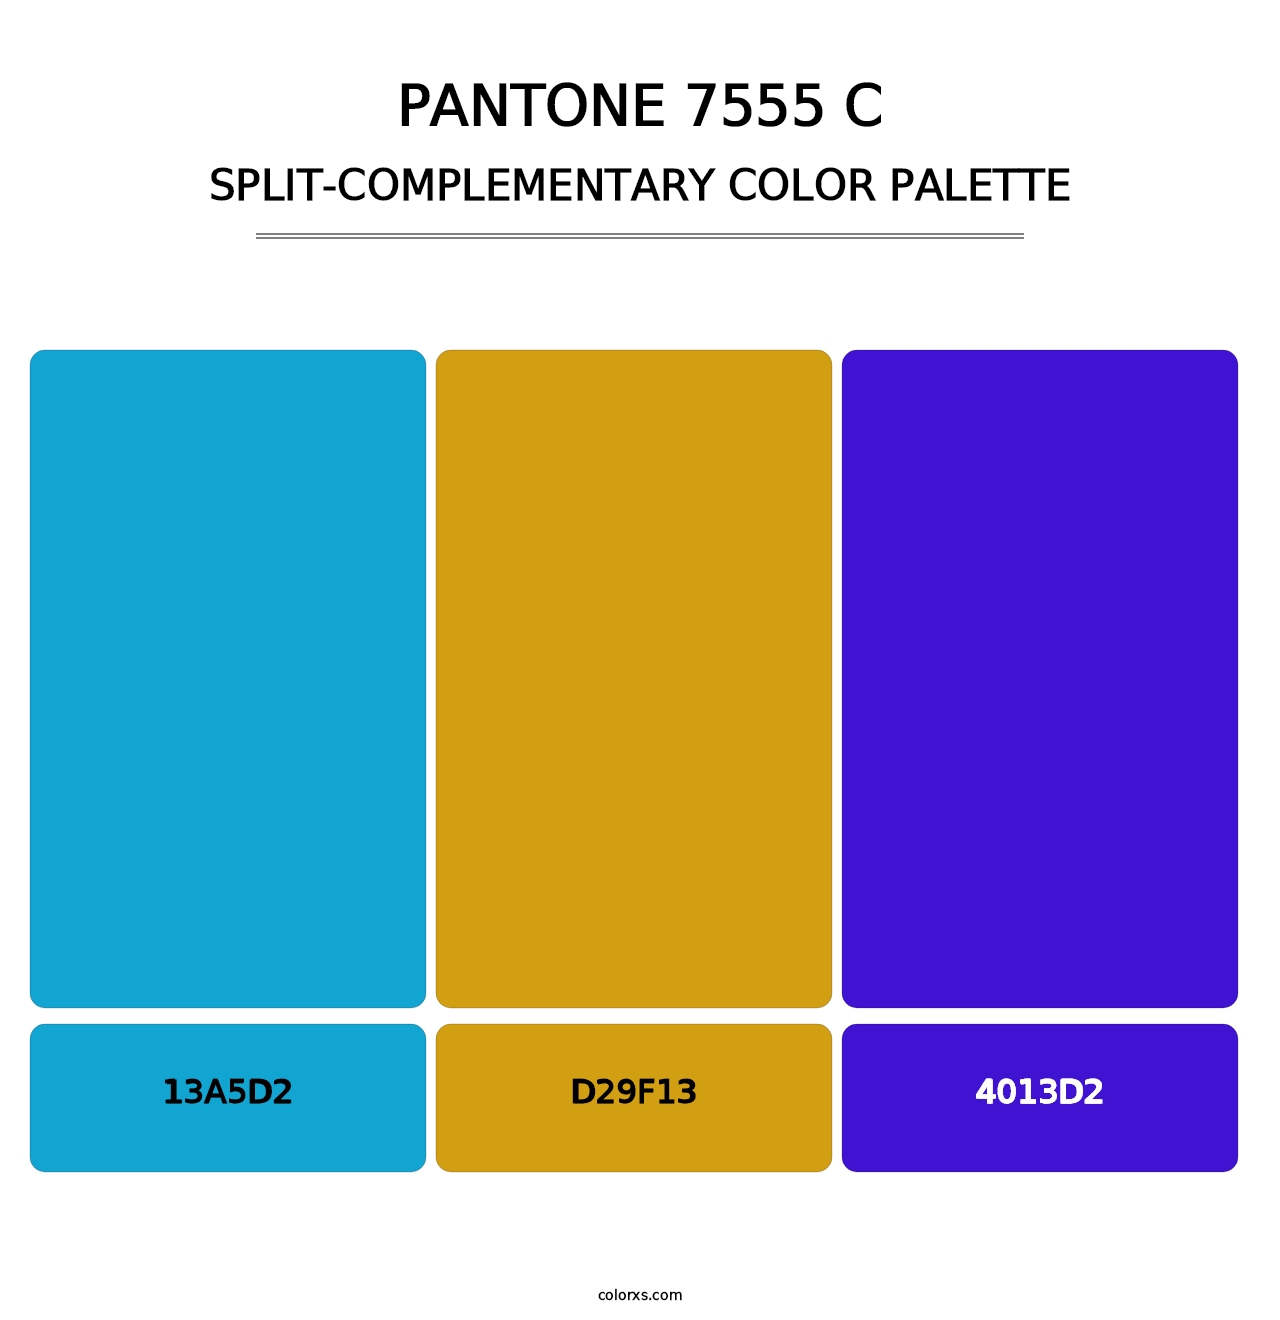 PANTONE 7555 C - Split-Complementary Color Palette